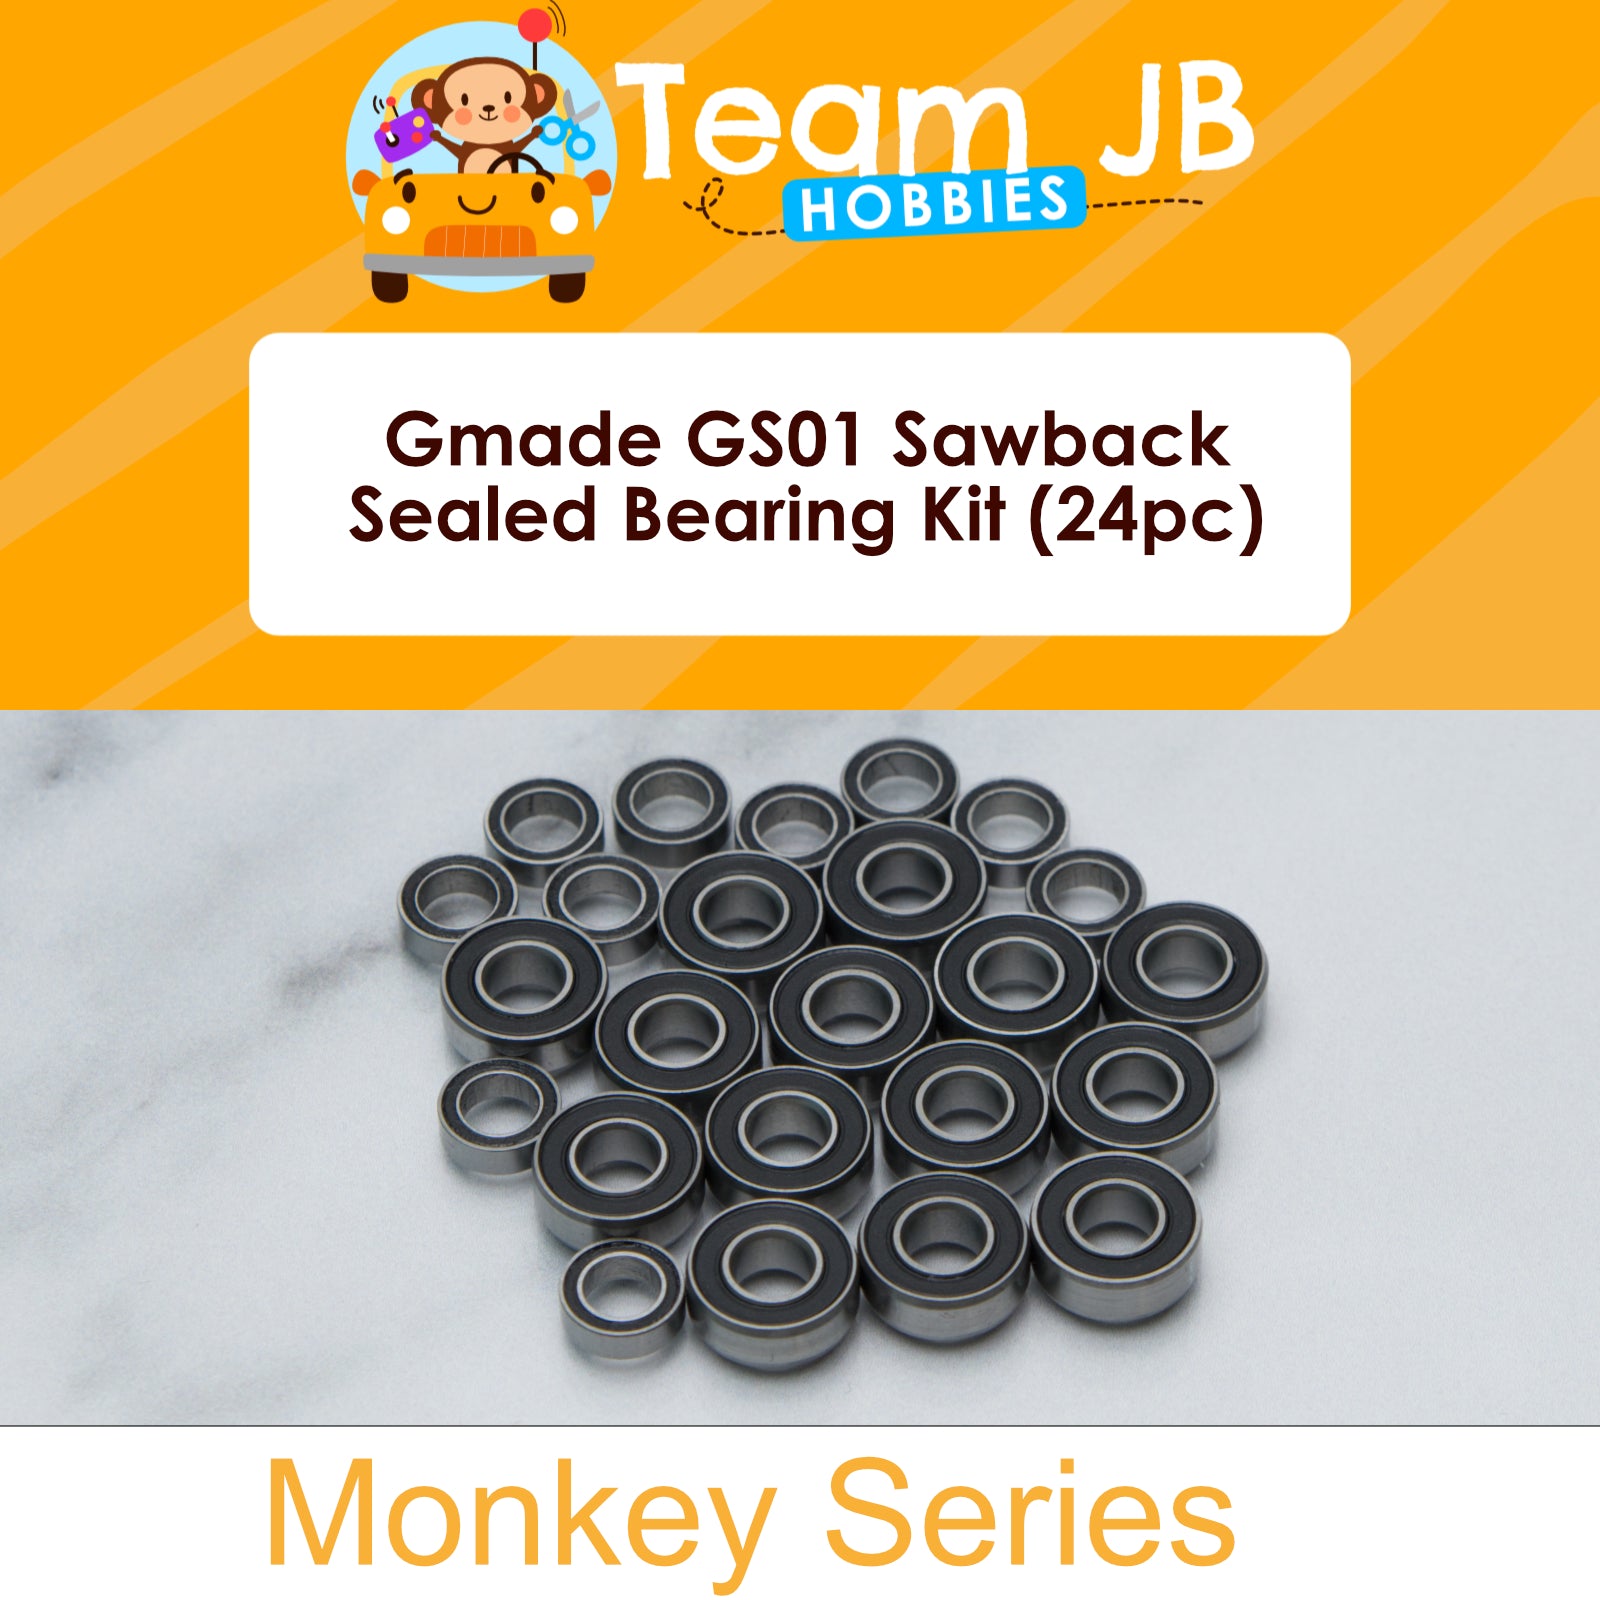 Gmade GS01 Sawback - Sealed Bearing Kit